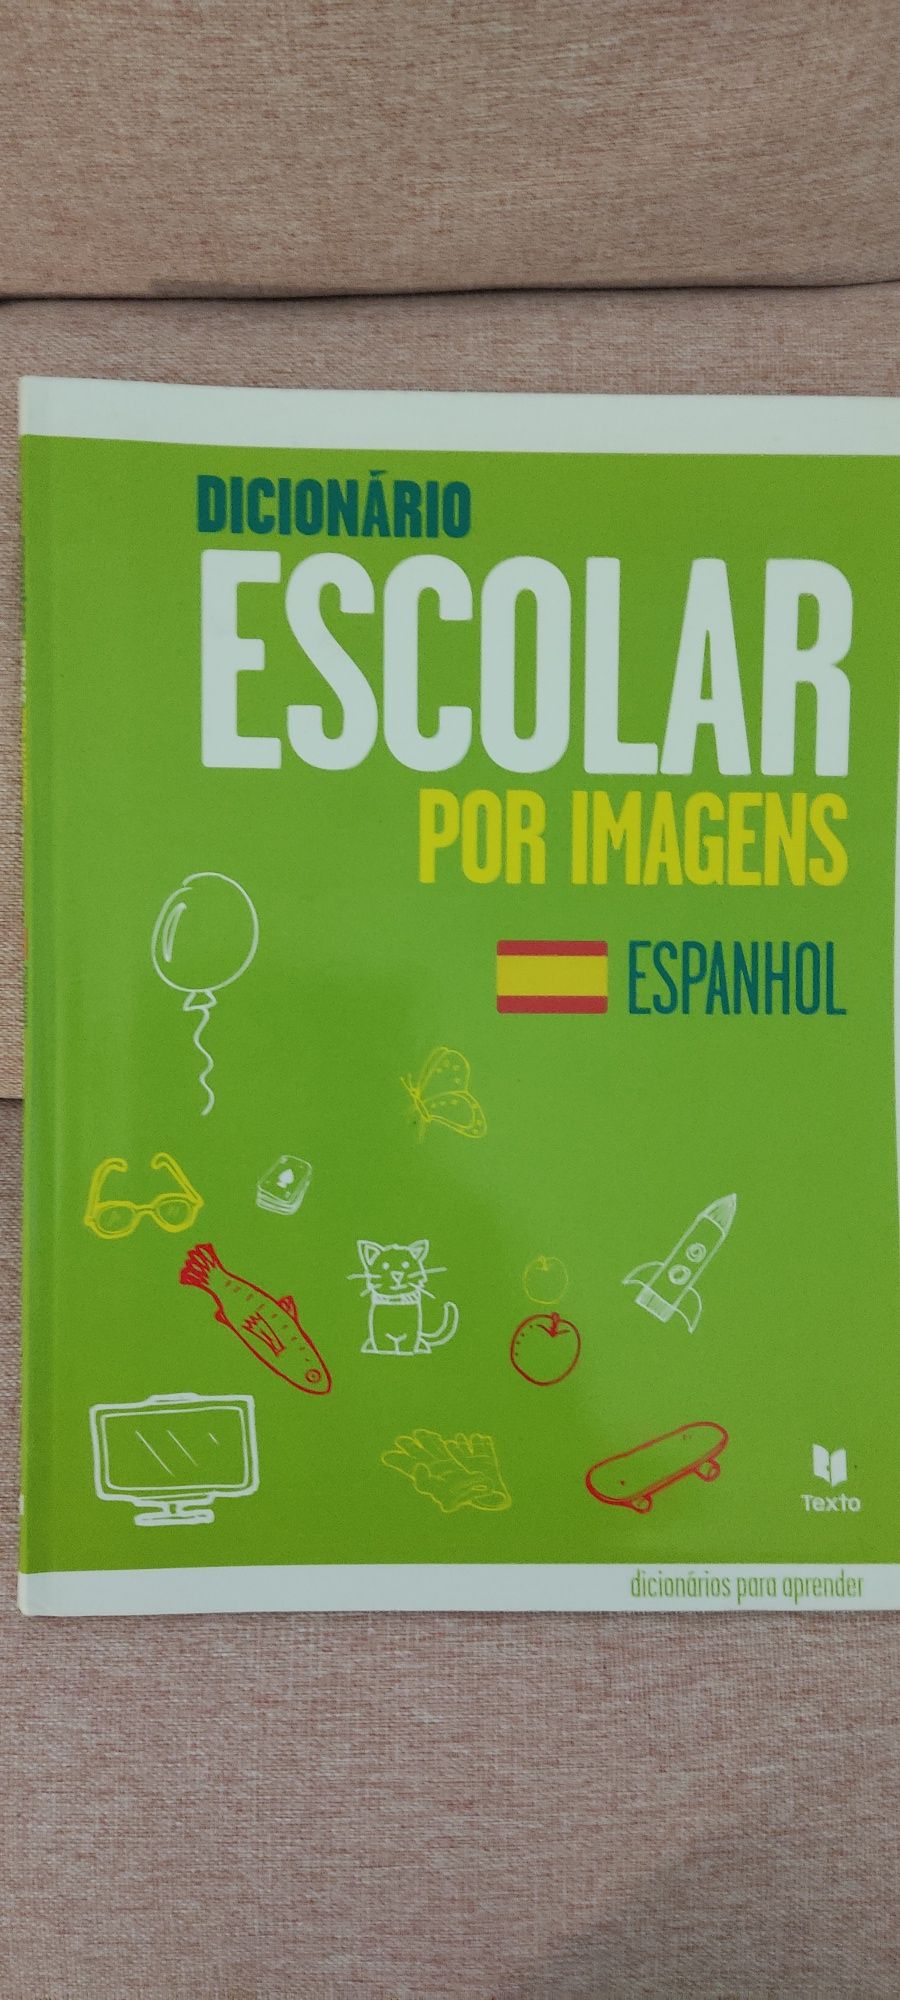 Dicionário Escolar por imagens Espanhol